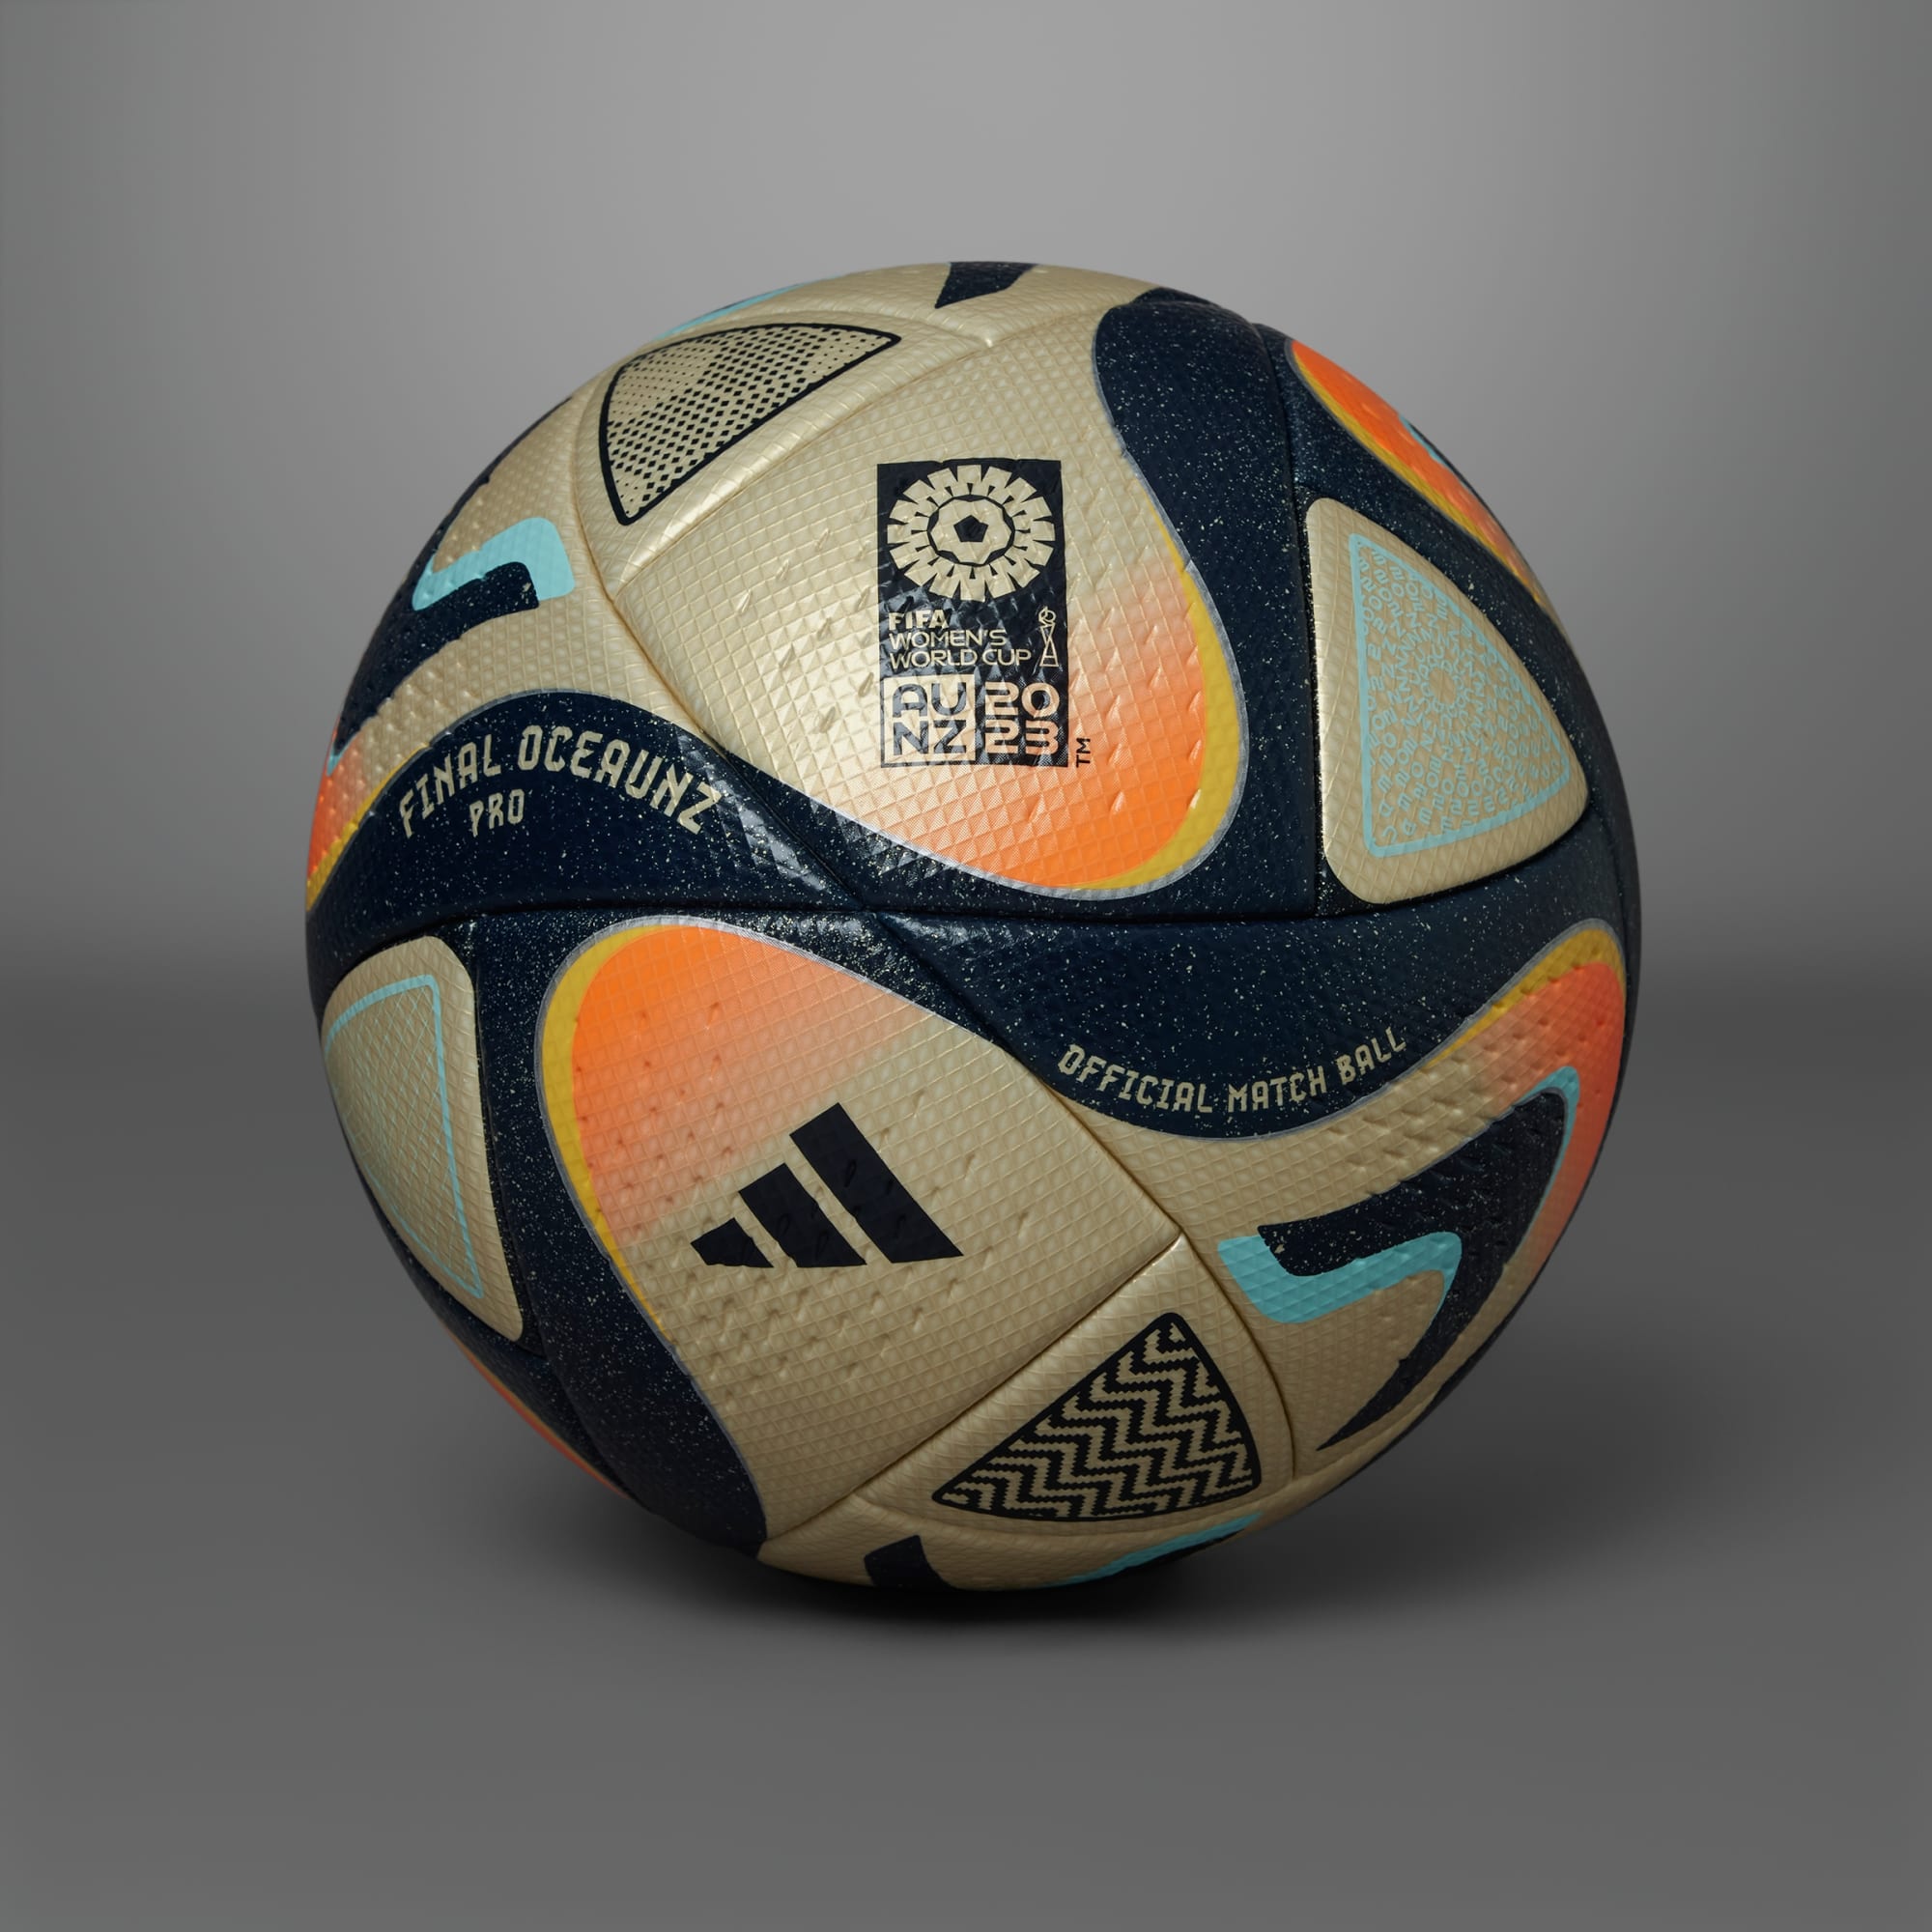 adidas unveils World Cup's final match ball